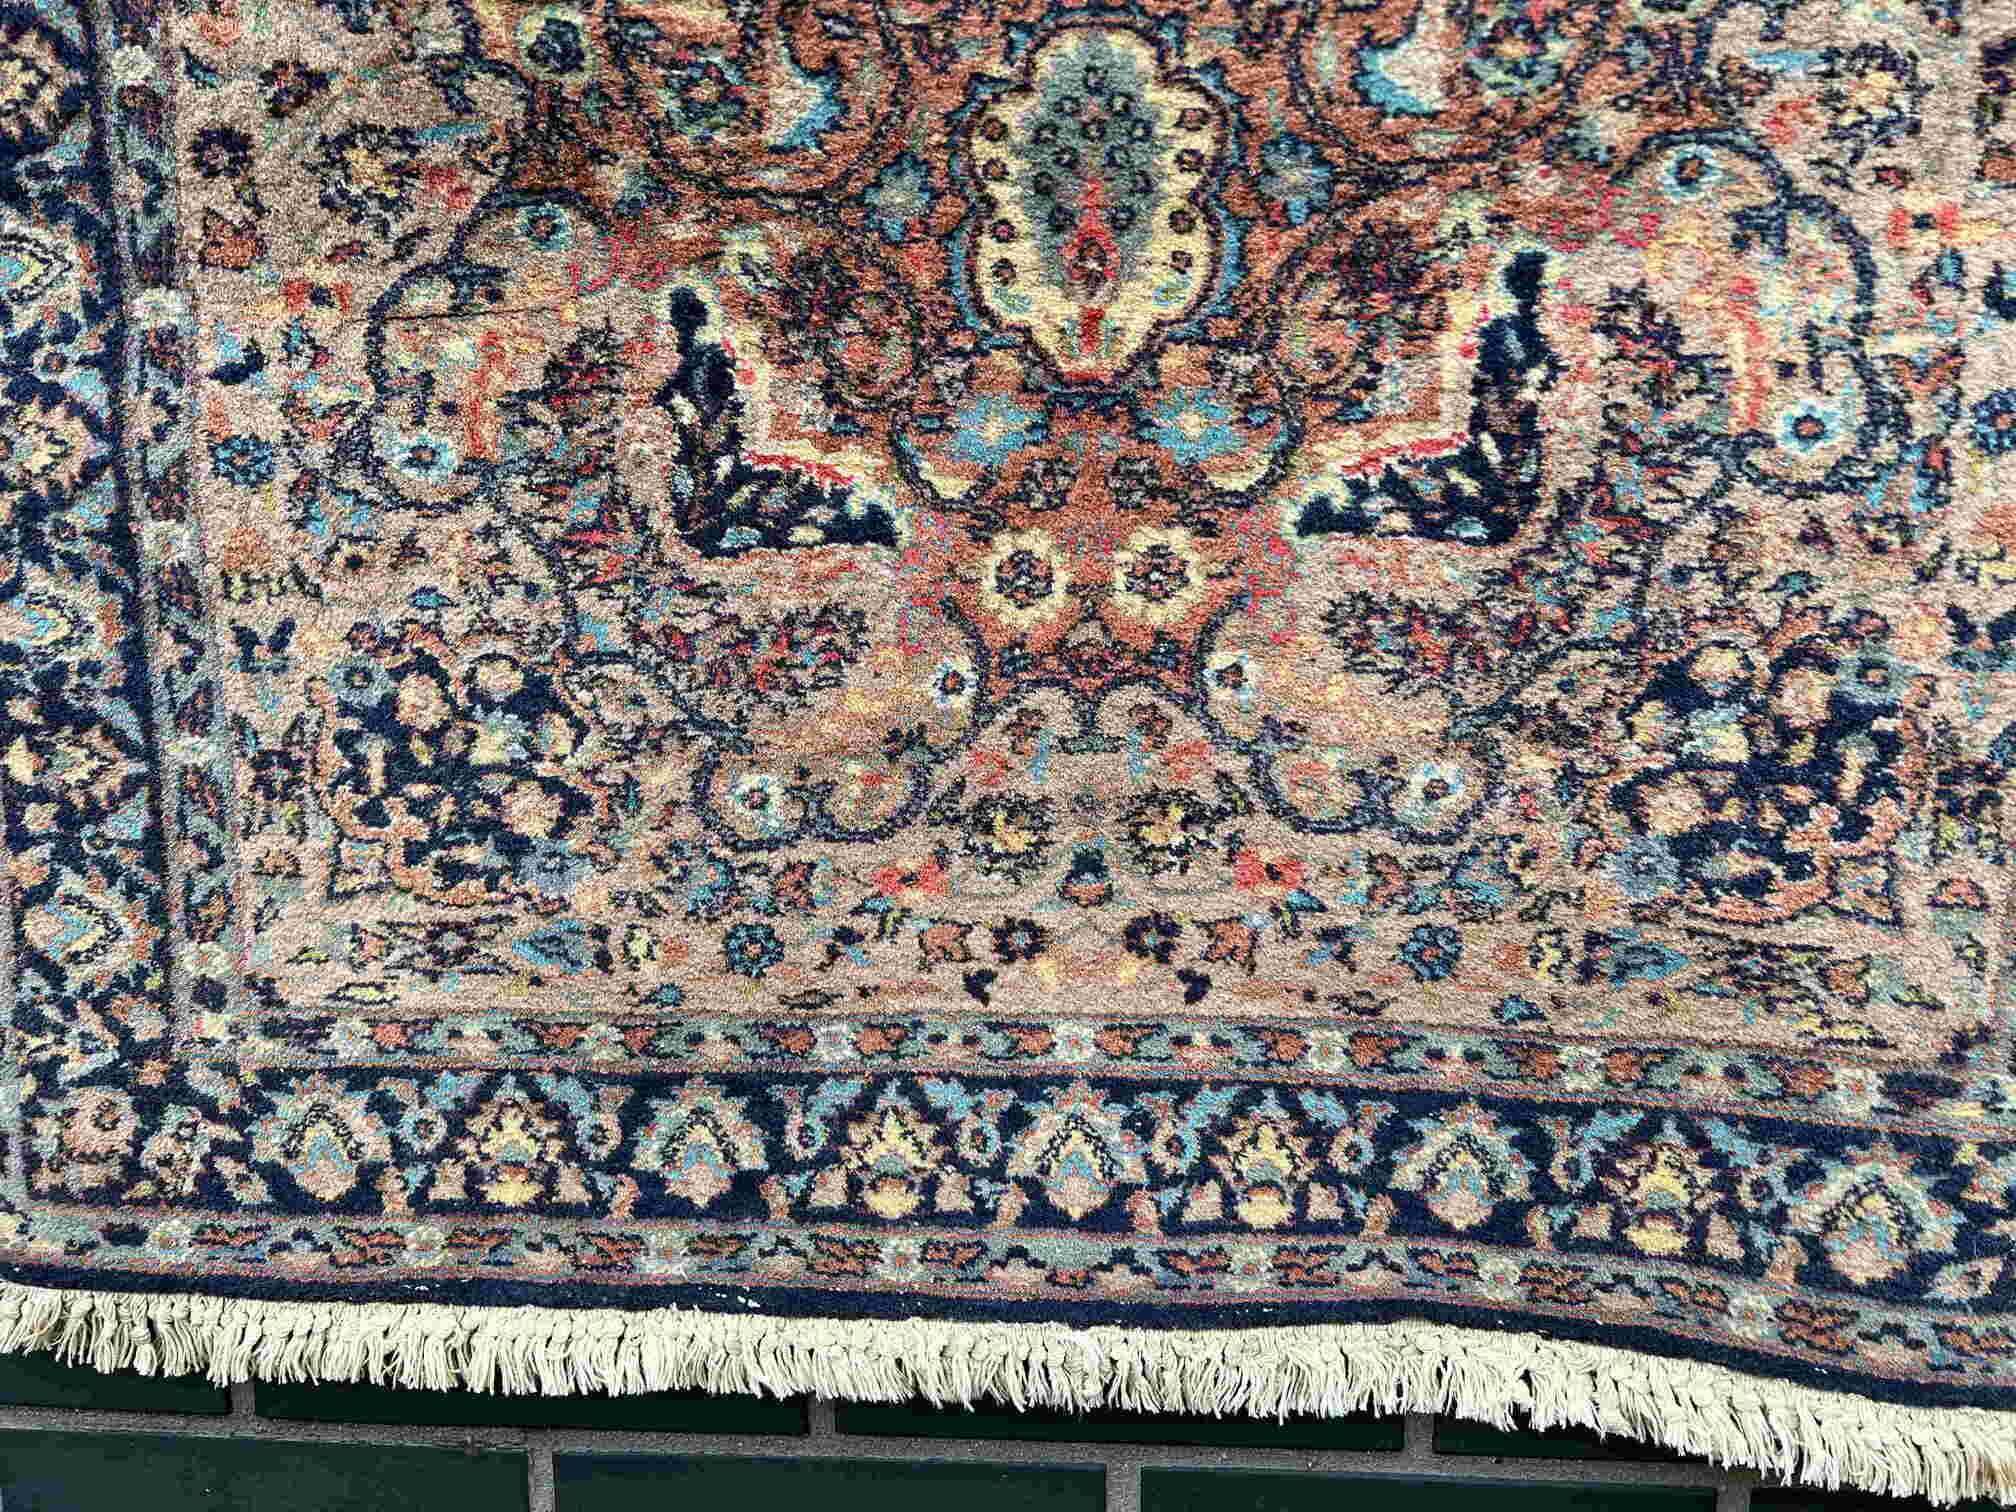 Dywanik antyczny perski Iran Teheran 170x96 galeria 7 tys